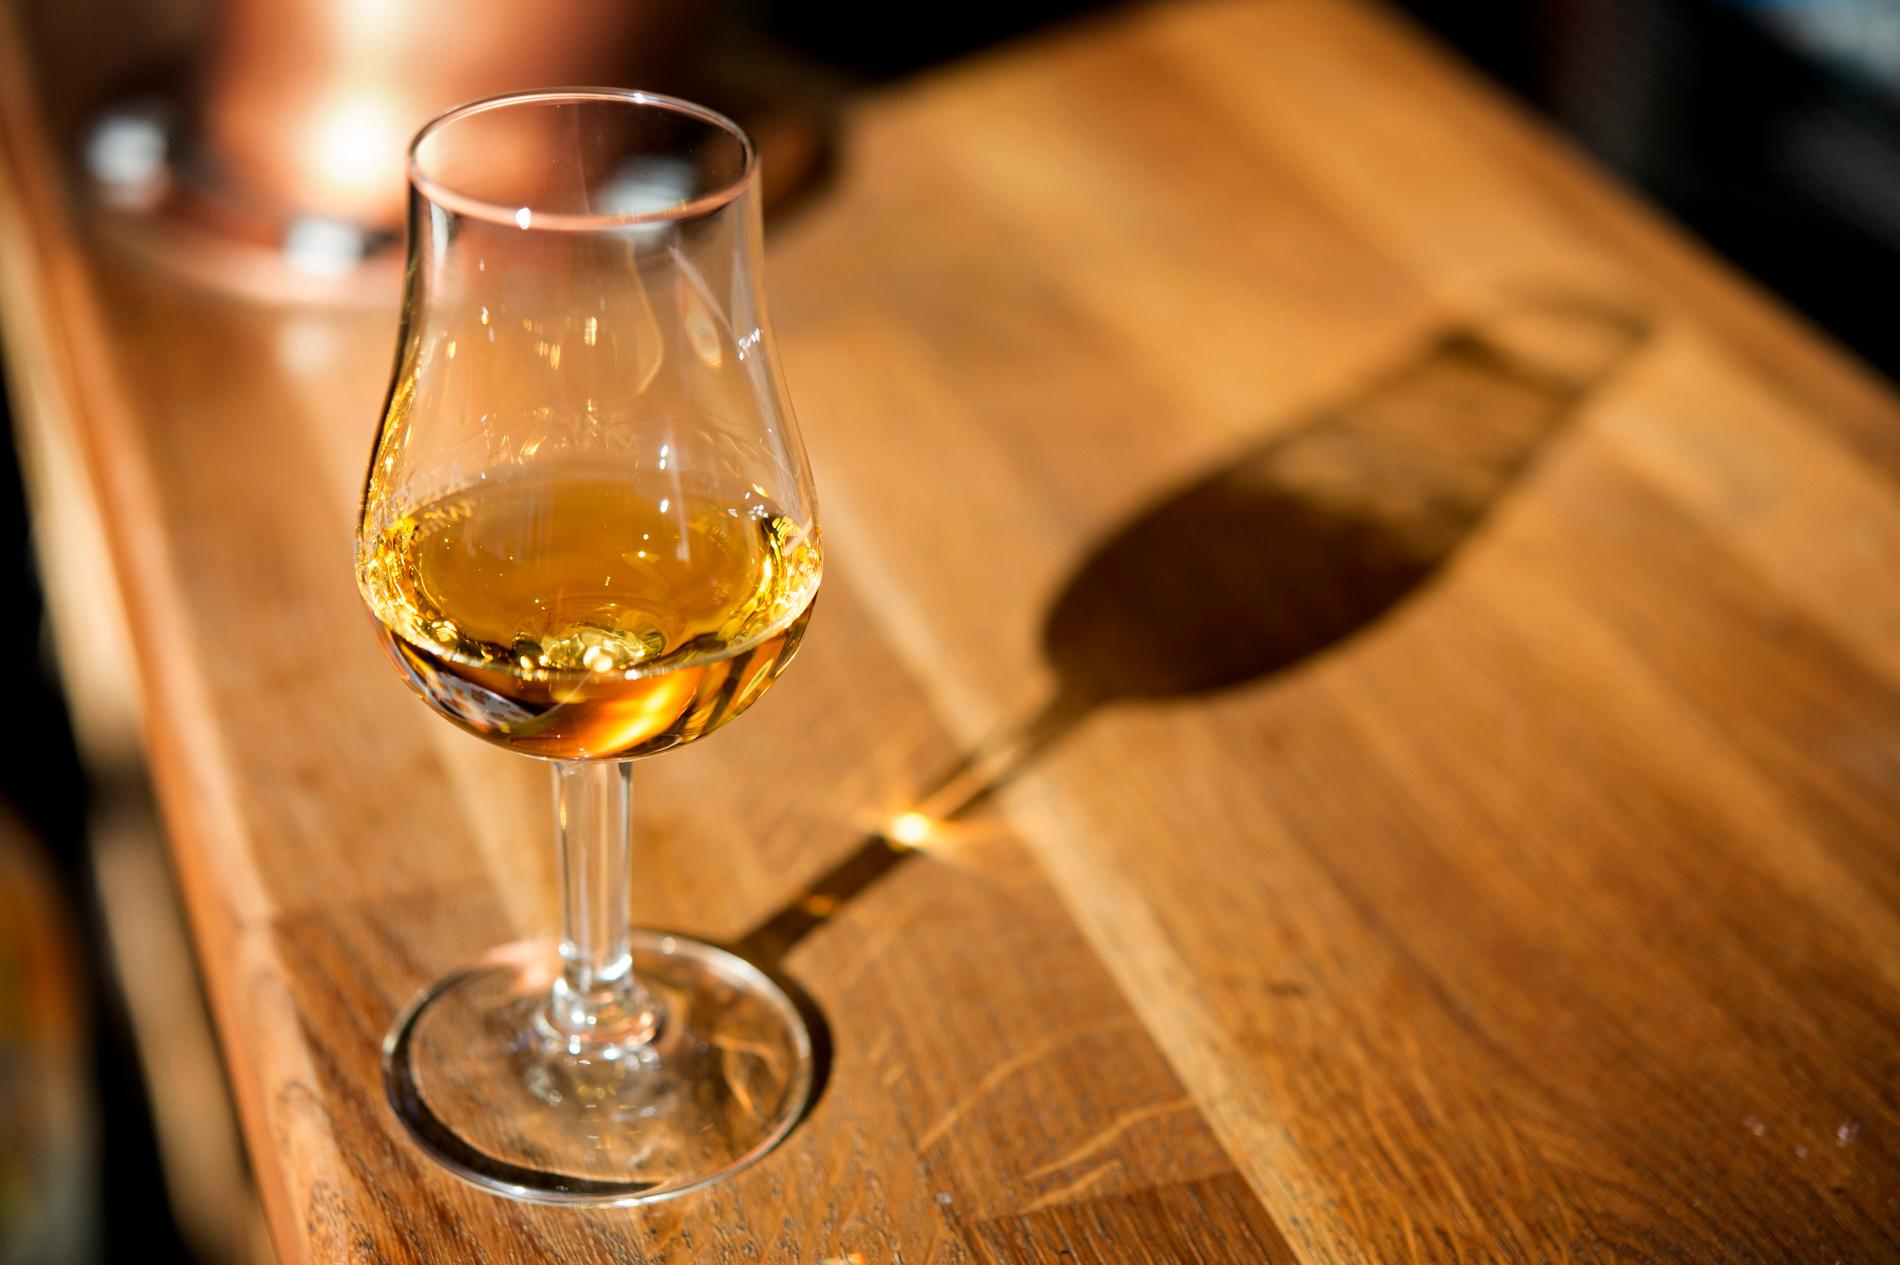 En privat samling med sällsynt whisky auktioneras just nu ut. Få flaskor lär dock korkas upp, enligt en whiskyexpert. Arkivbild.